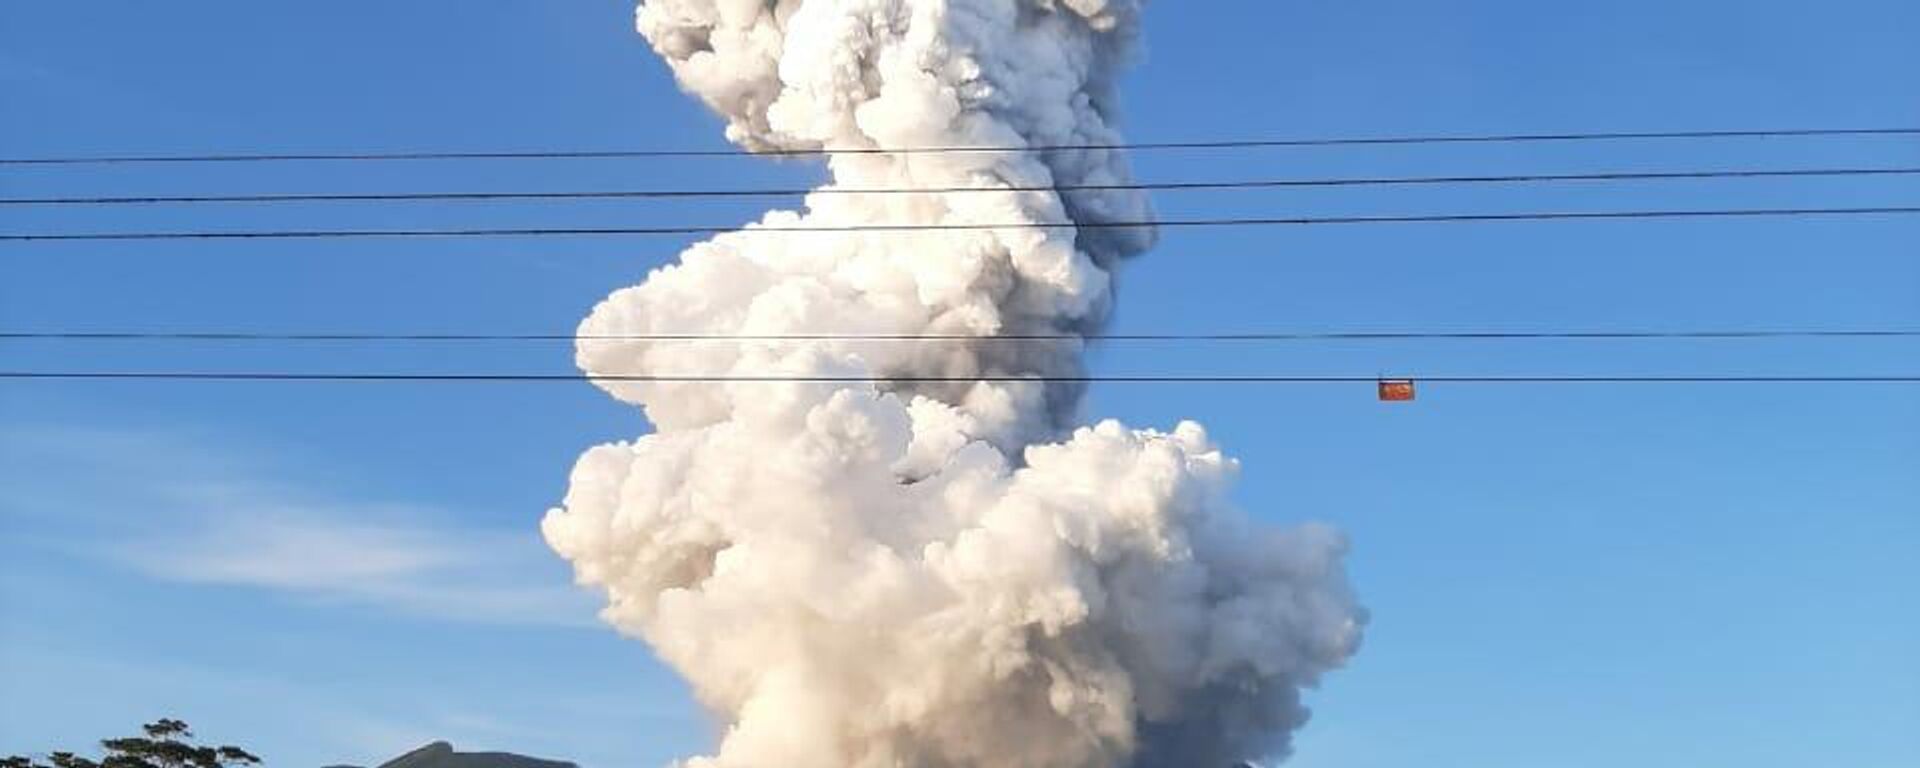 Erupción del volcán Rincón de la Vieja en Costa Rica - Sputnik Mundo, 1920, 29.06.2021